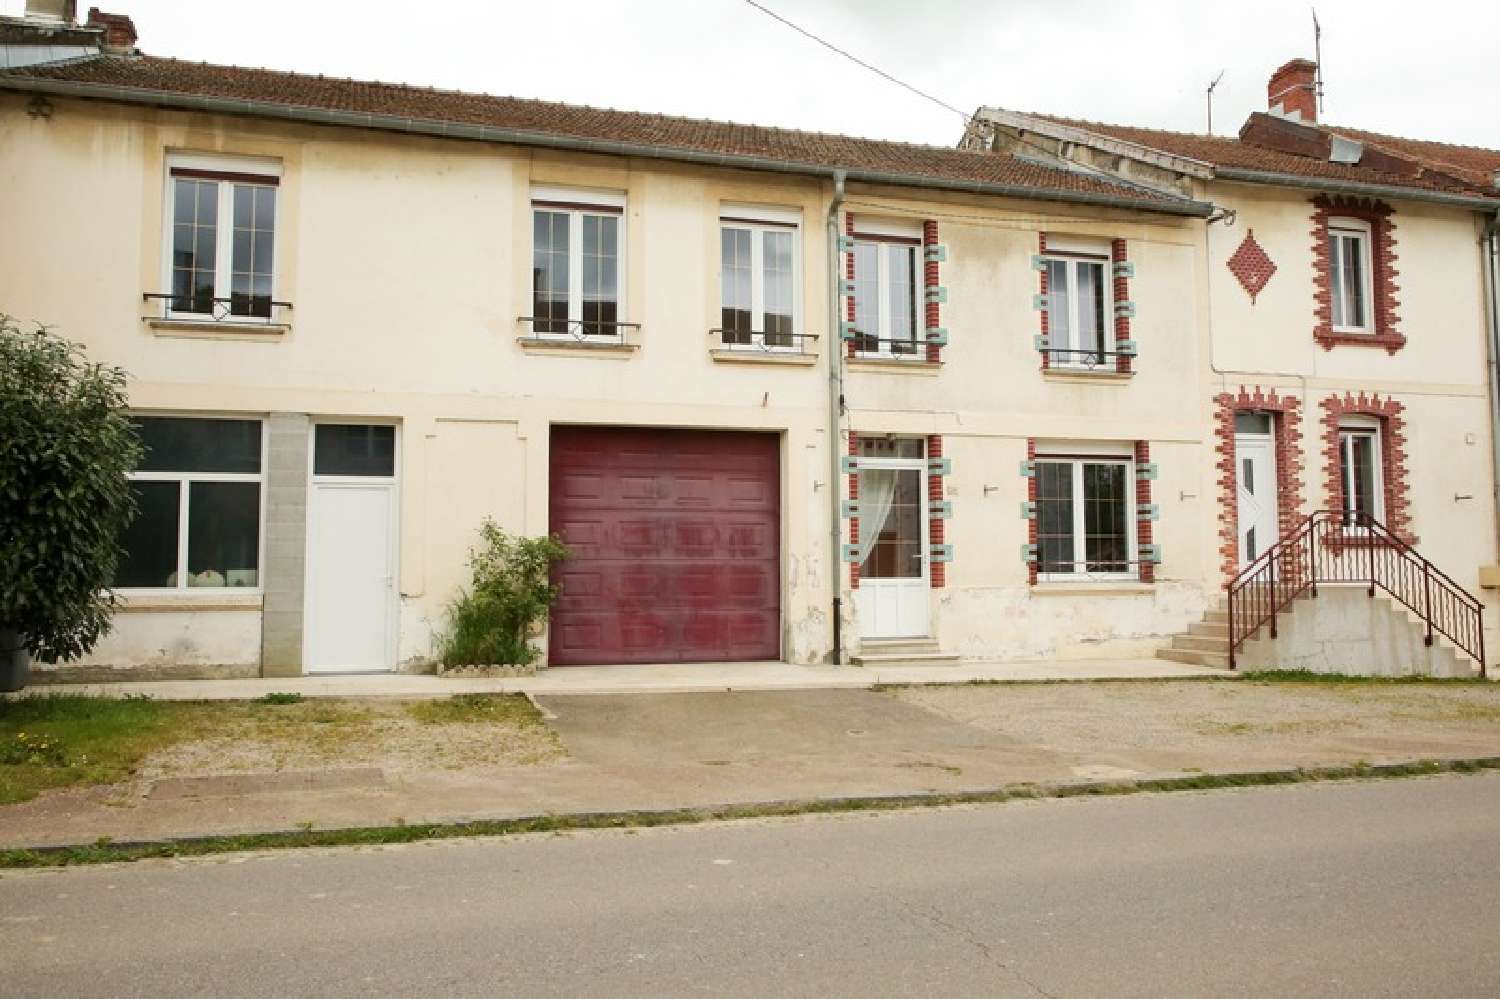  à vendre maison de village Romagne-sous-Montfaucon Meuse 1